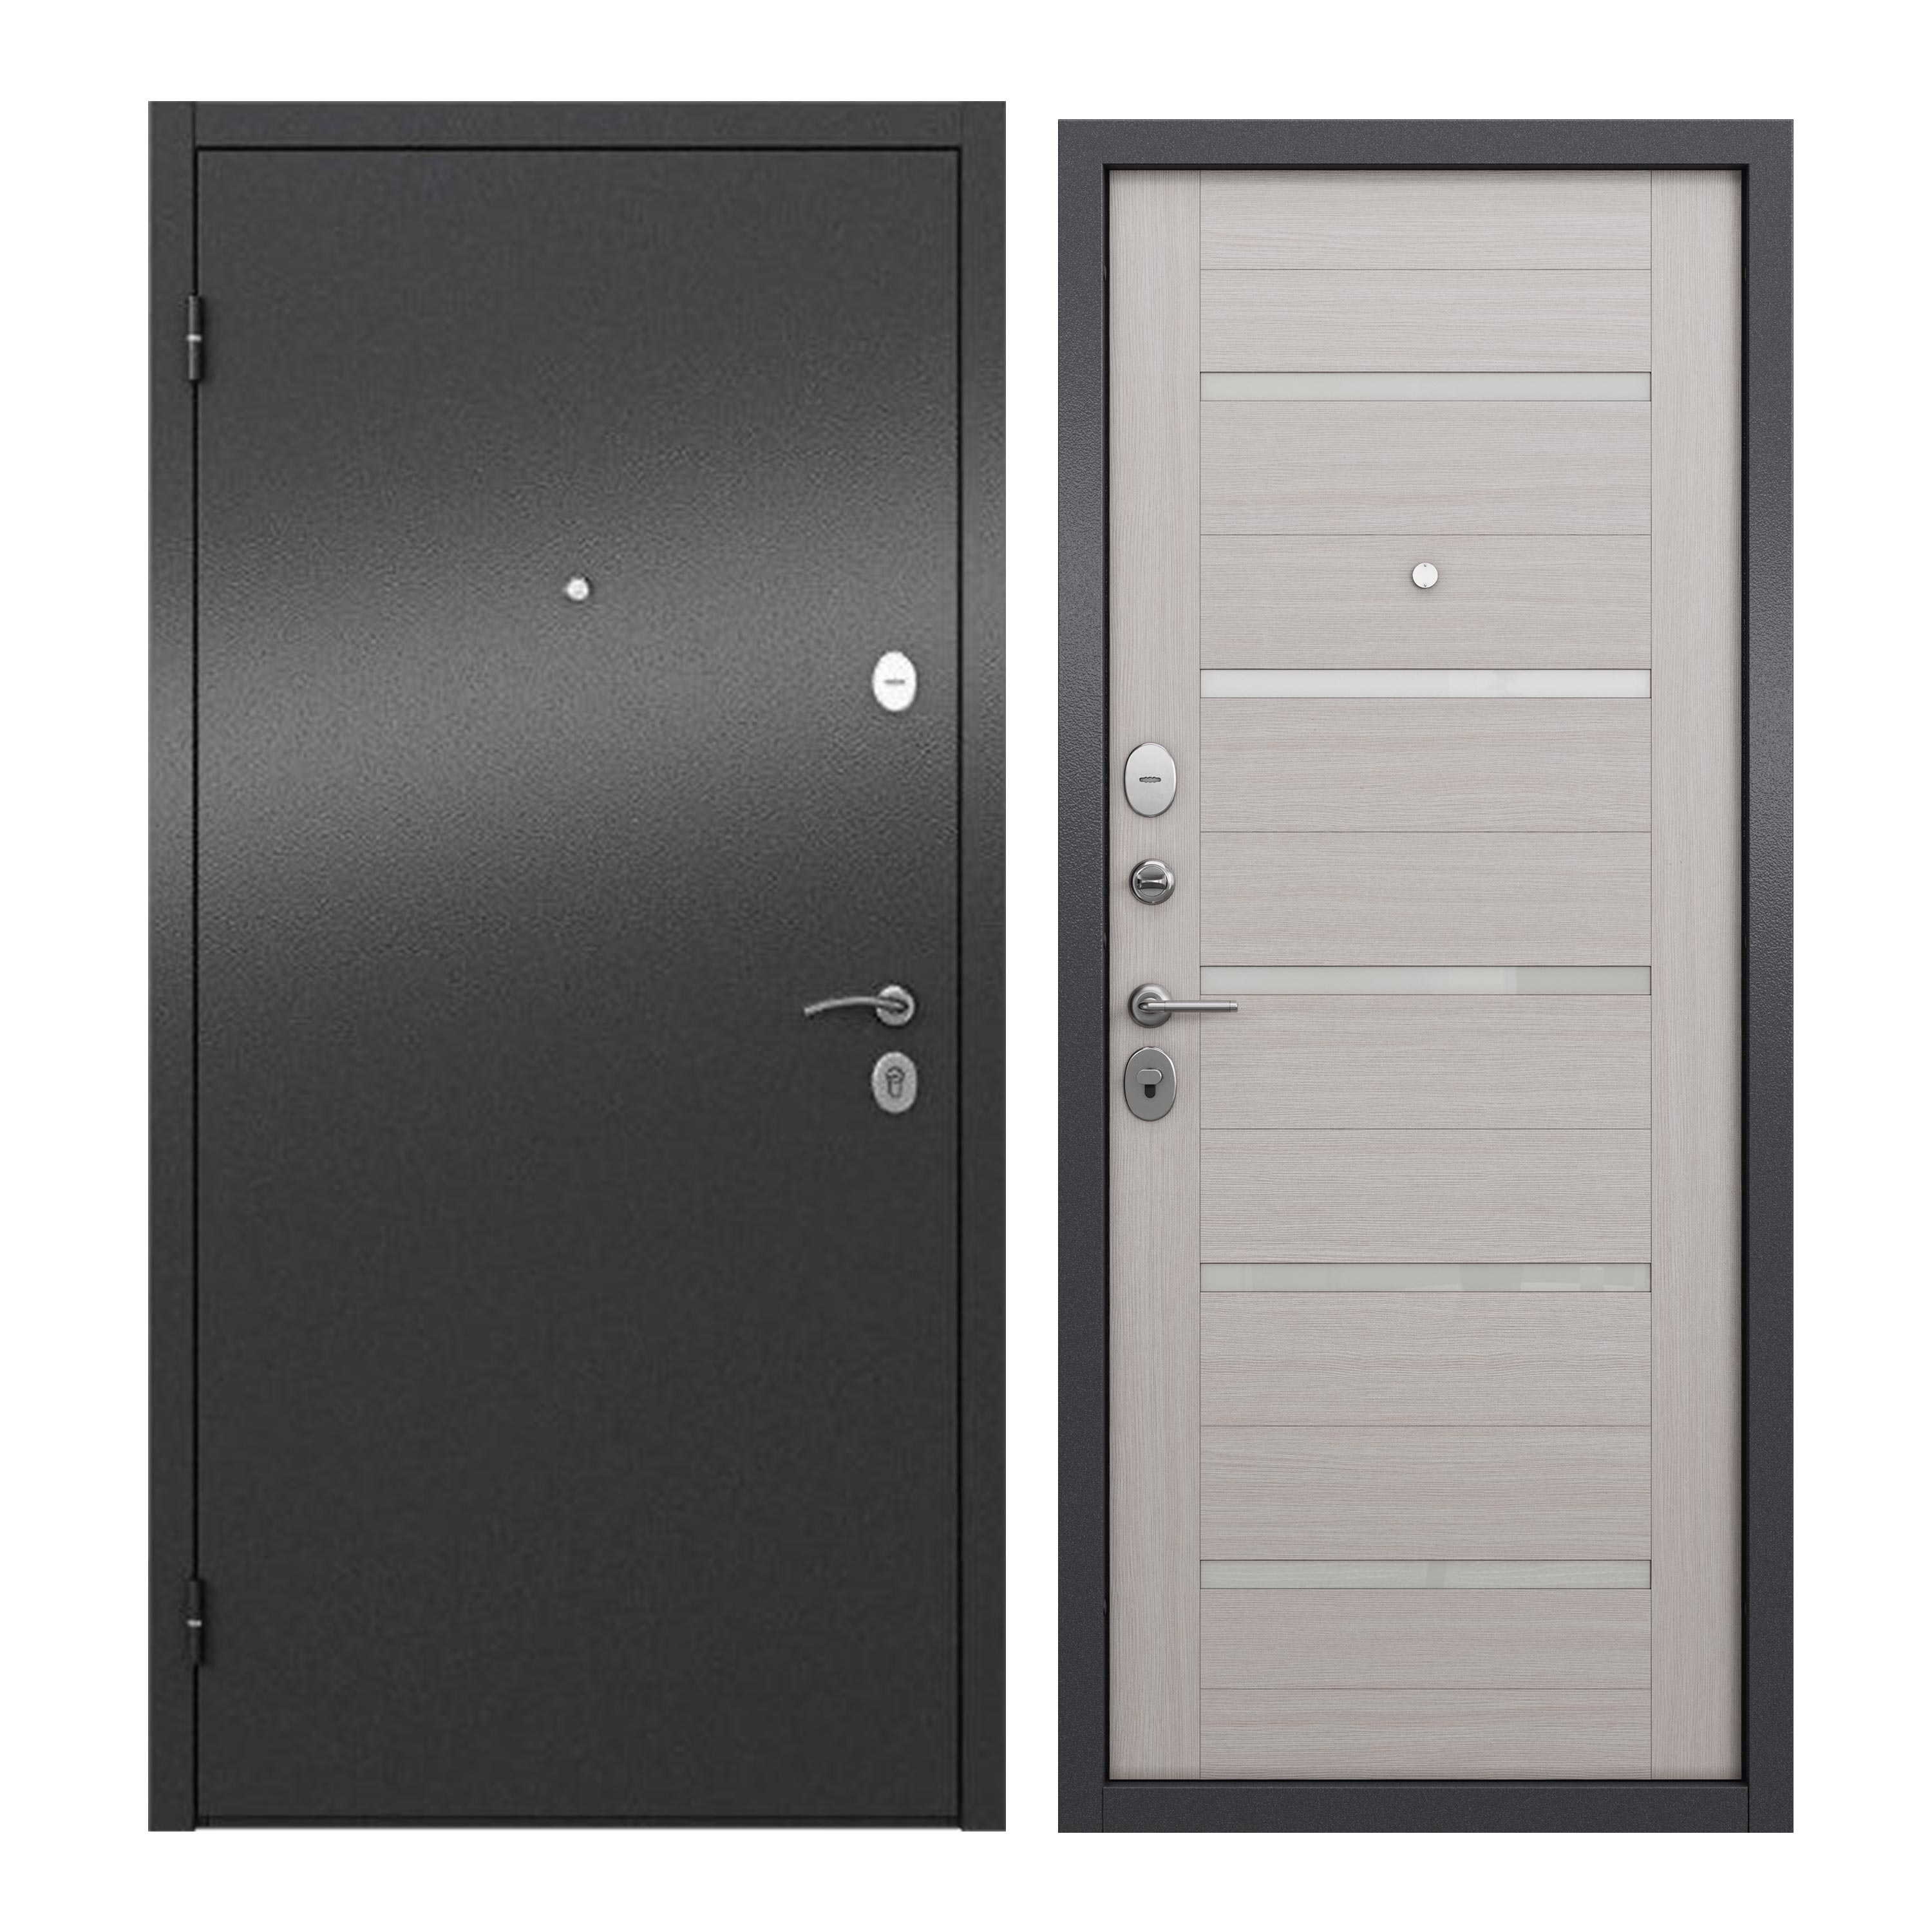 Дверь входная для квартиры ProLine металлическая Apartment X 960х2050, левая, серый дверь входная buldoors вега левая букле шоколад ларче белый 960х2050 мм